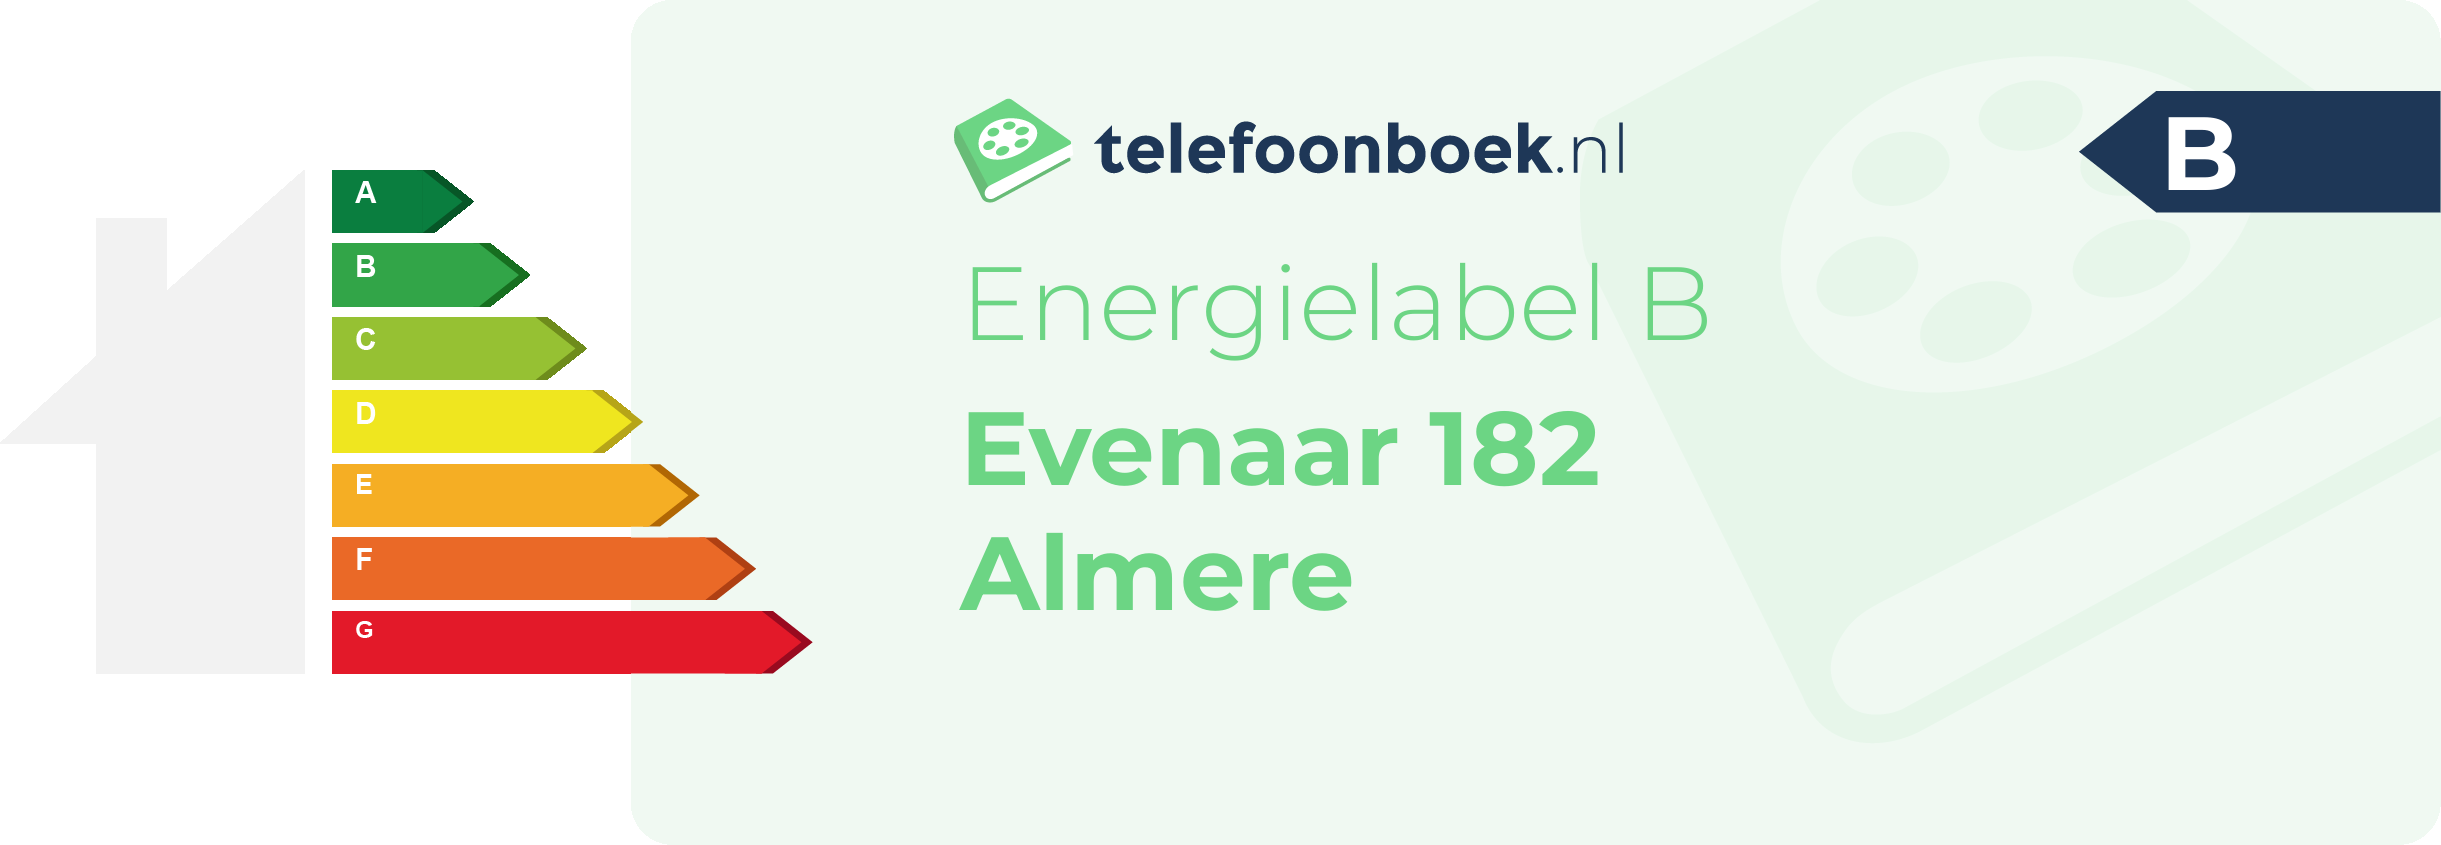 Energielabel Evenaar 182 Almere